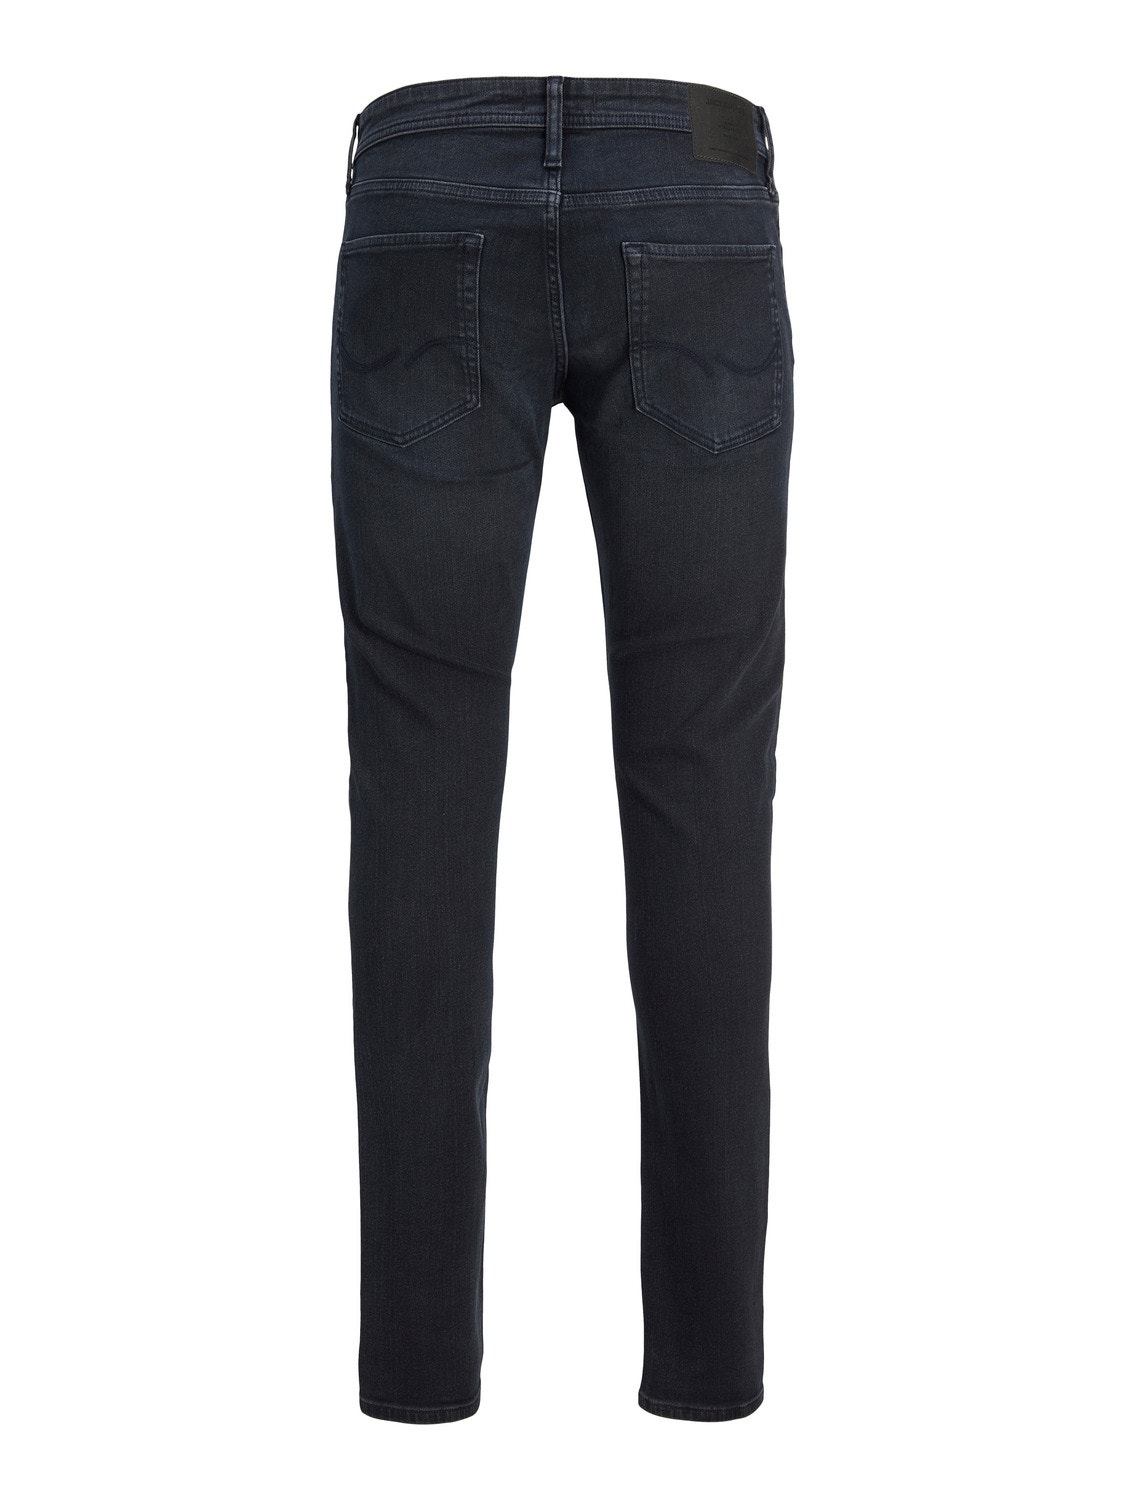 Jack & Jones JJIWHLIAM JJORIGINAL MF 106 Skinny fit jeans -Black Denim - 12218746